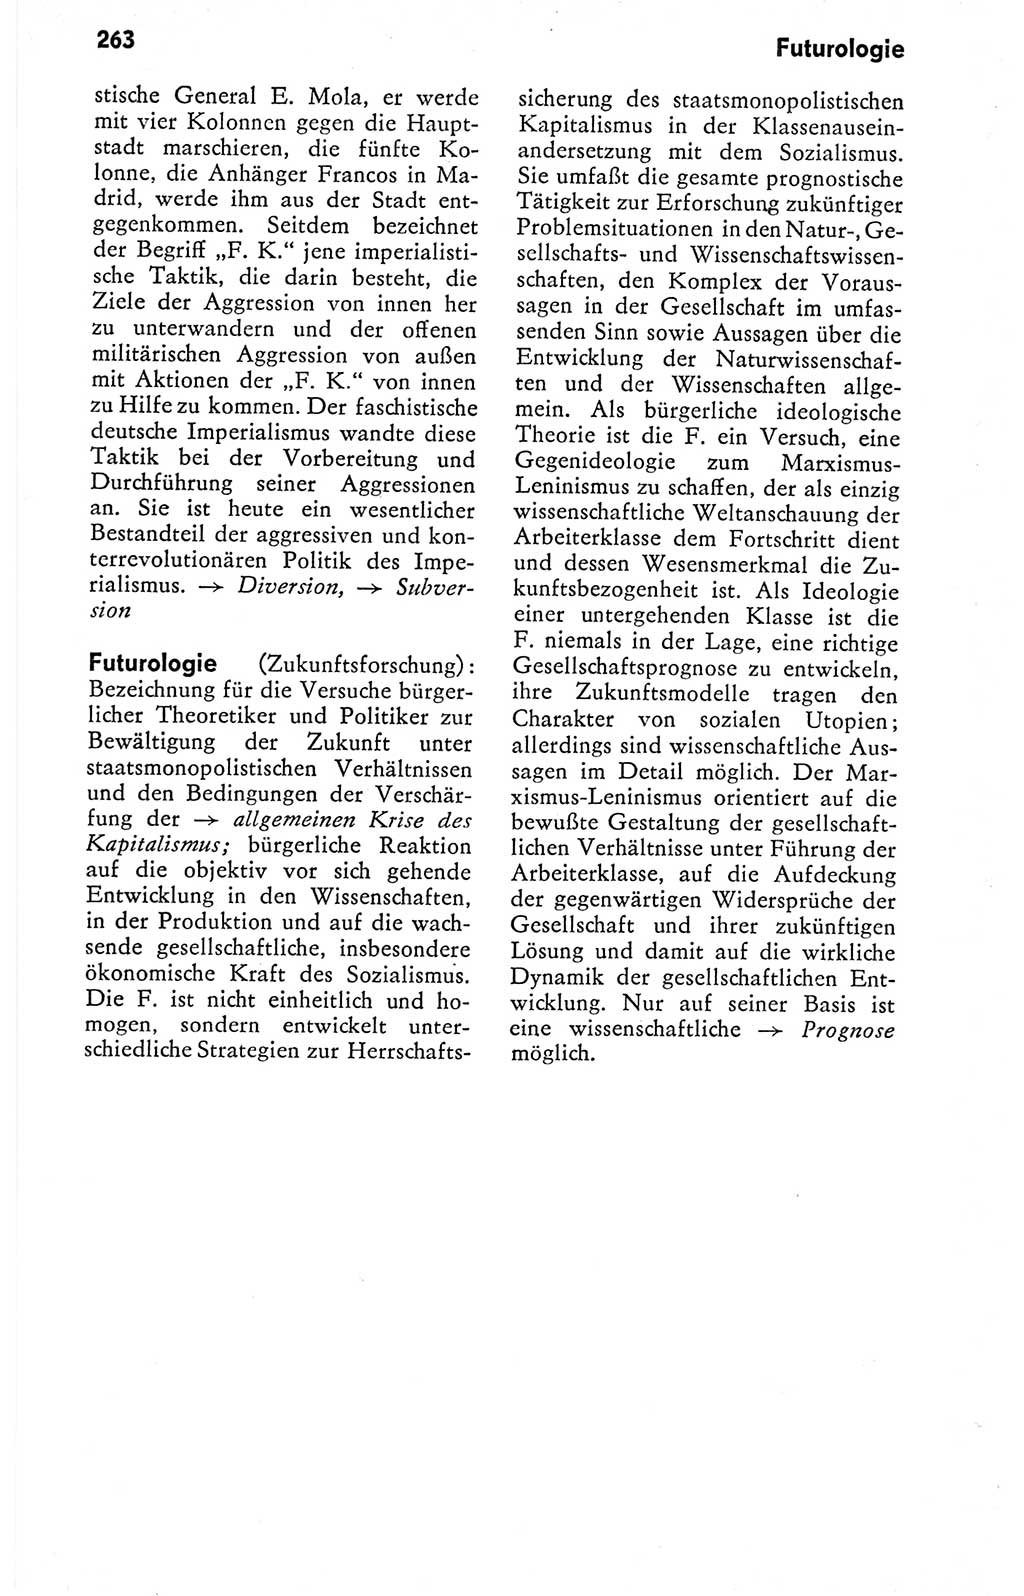 Kleines politisches Wörterbuch [Deutsche Demokratische Republik (DDR)] 1978, Seite 263 (Kl. pol. Wb. DDR 1978, S. 263)